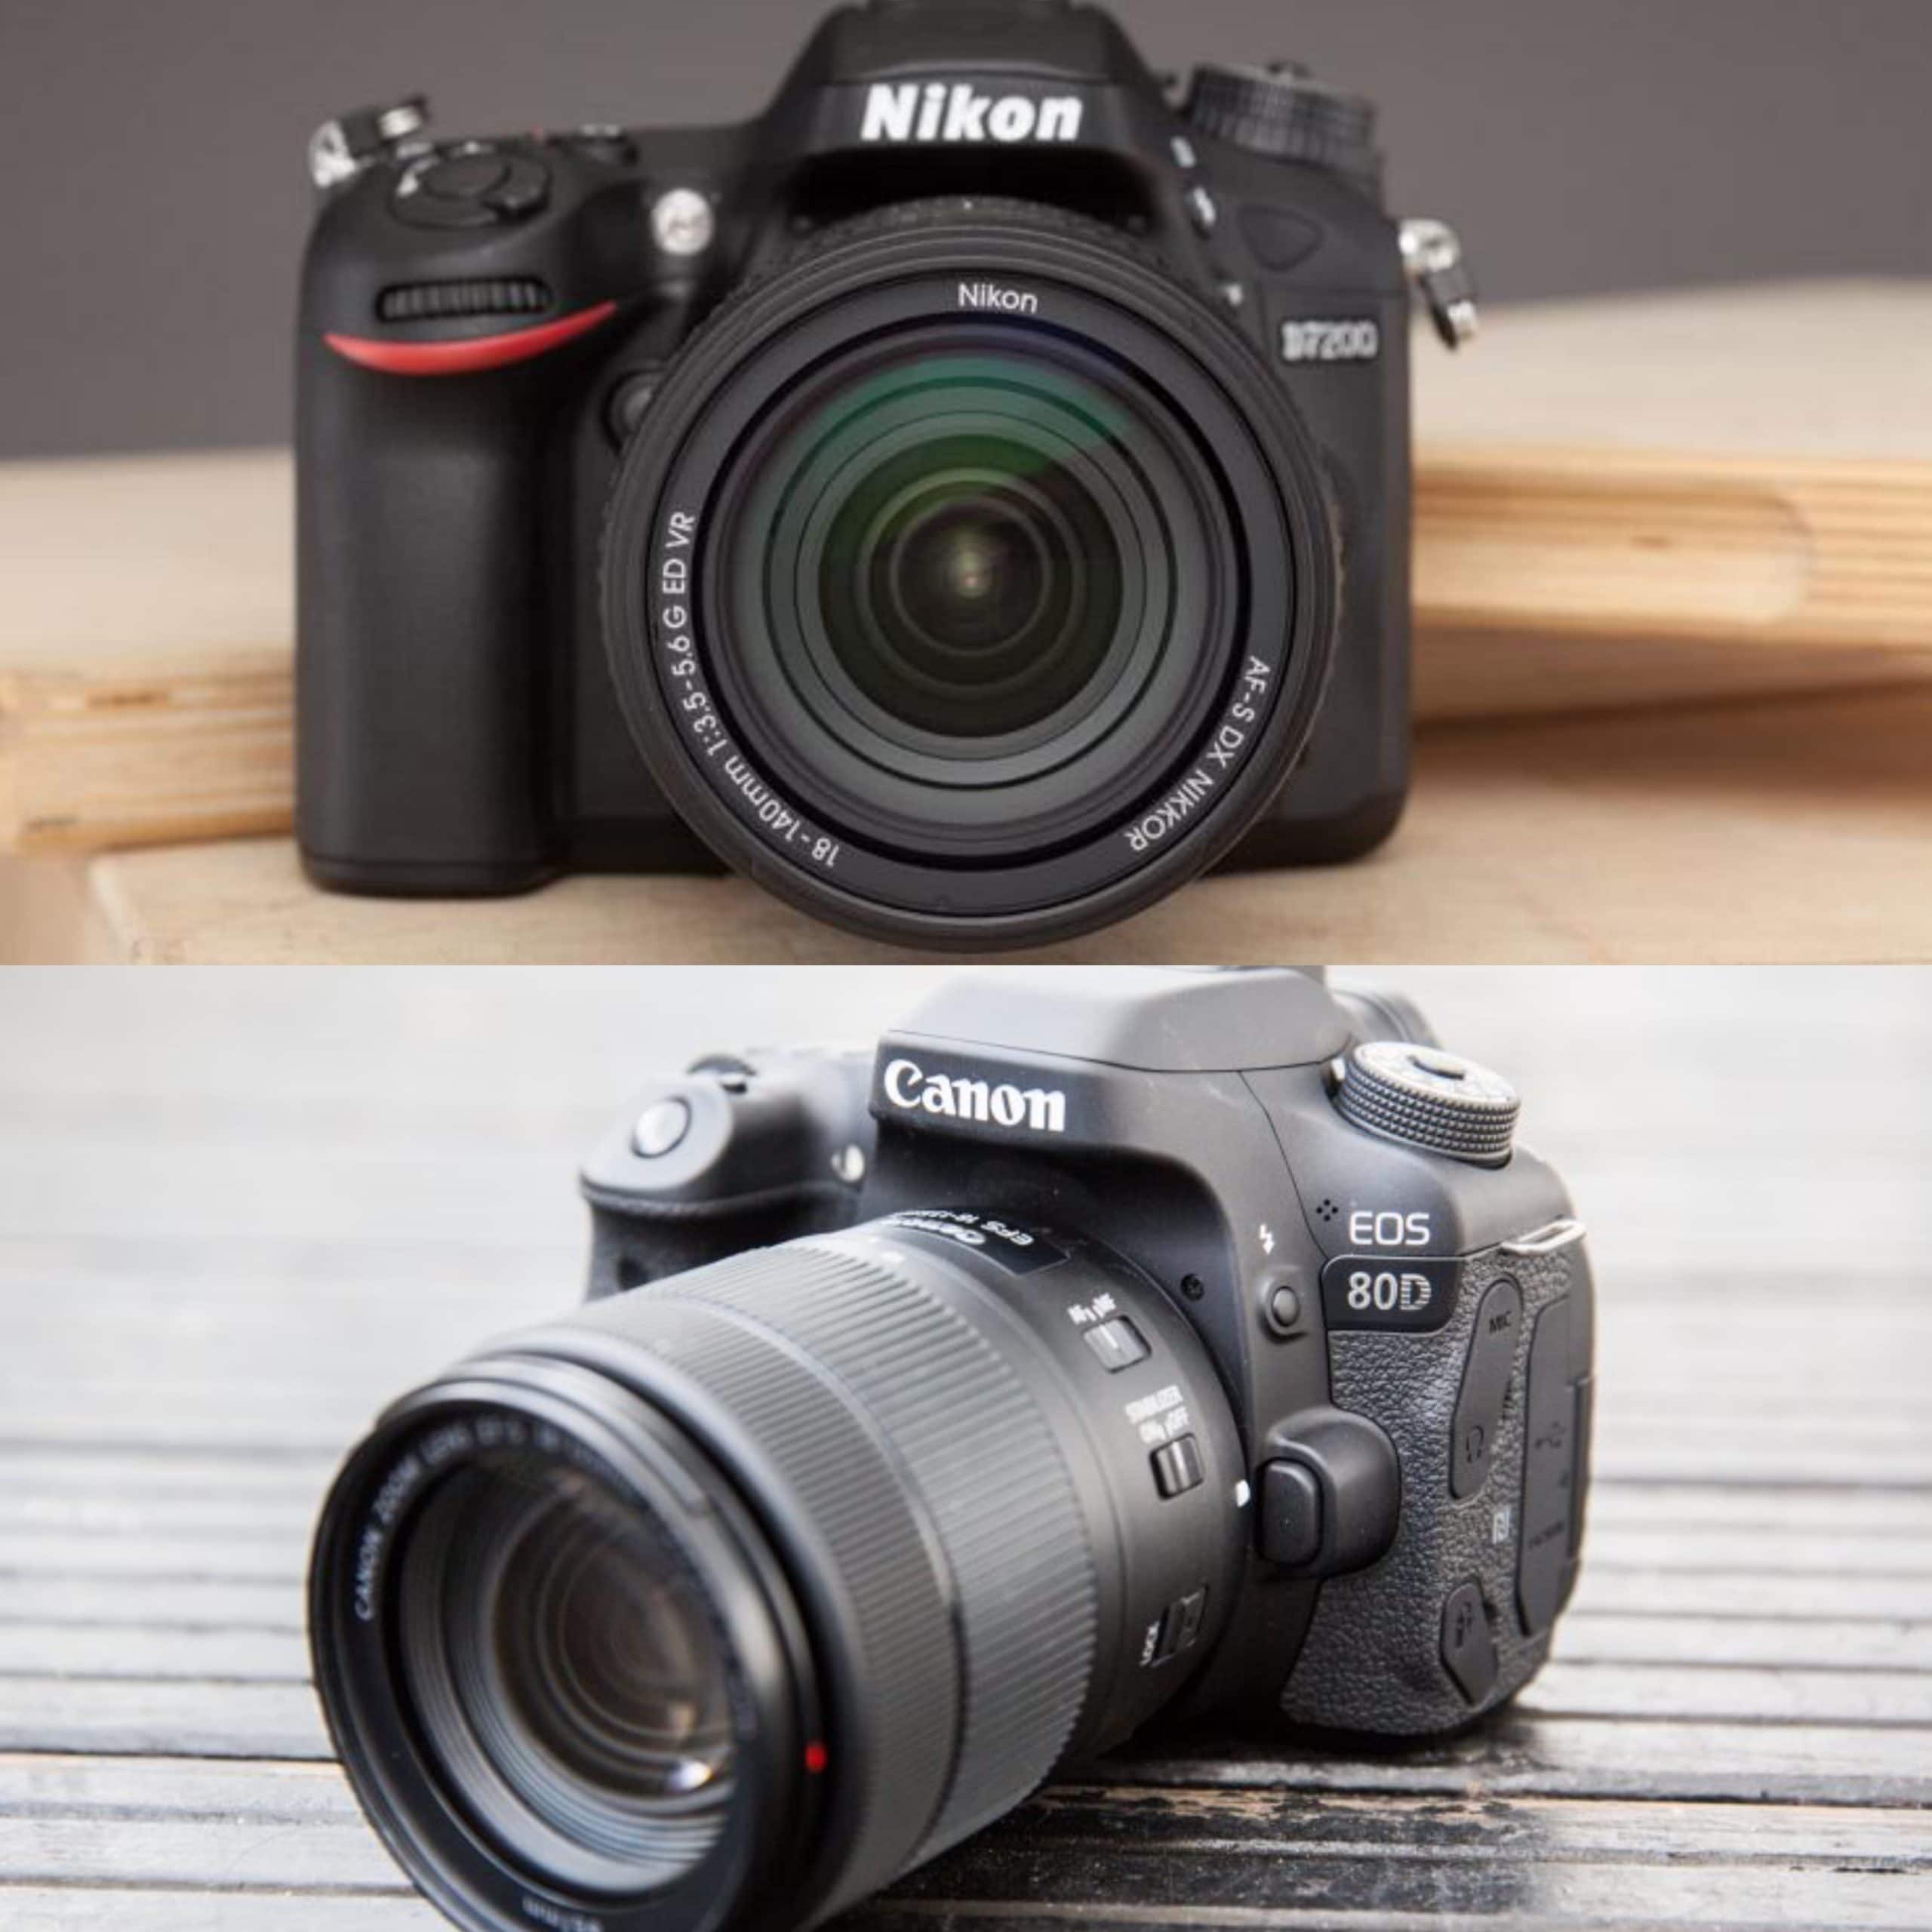 Nikon D7200 vs Canon D80